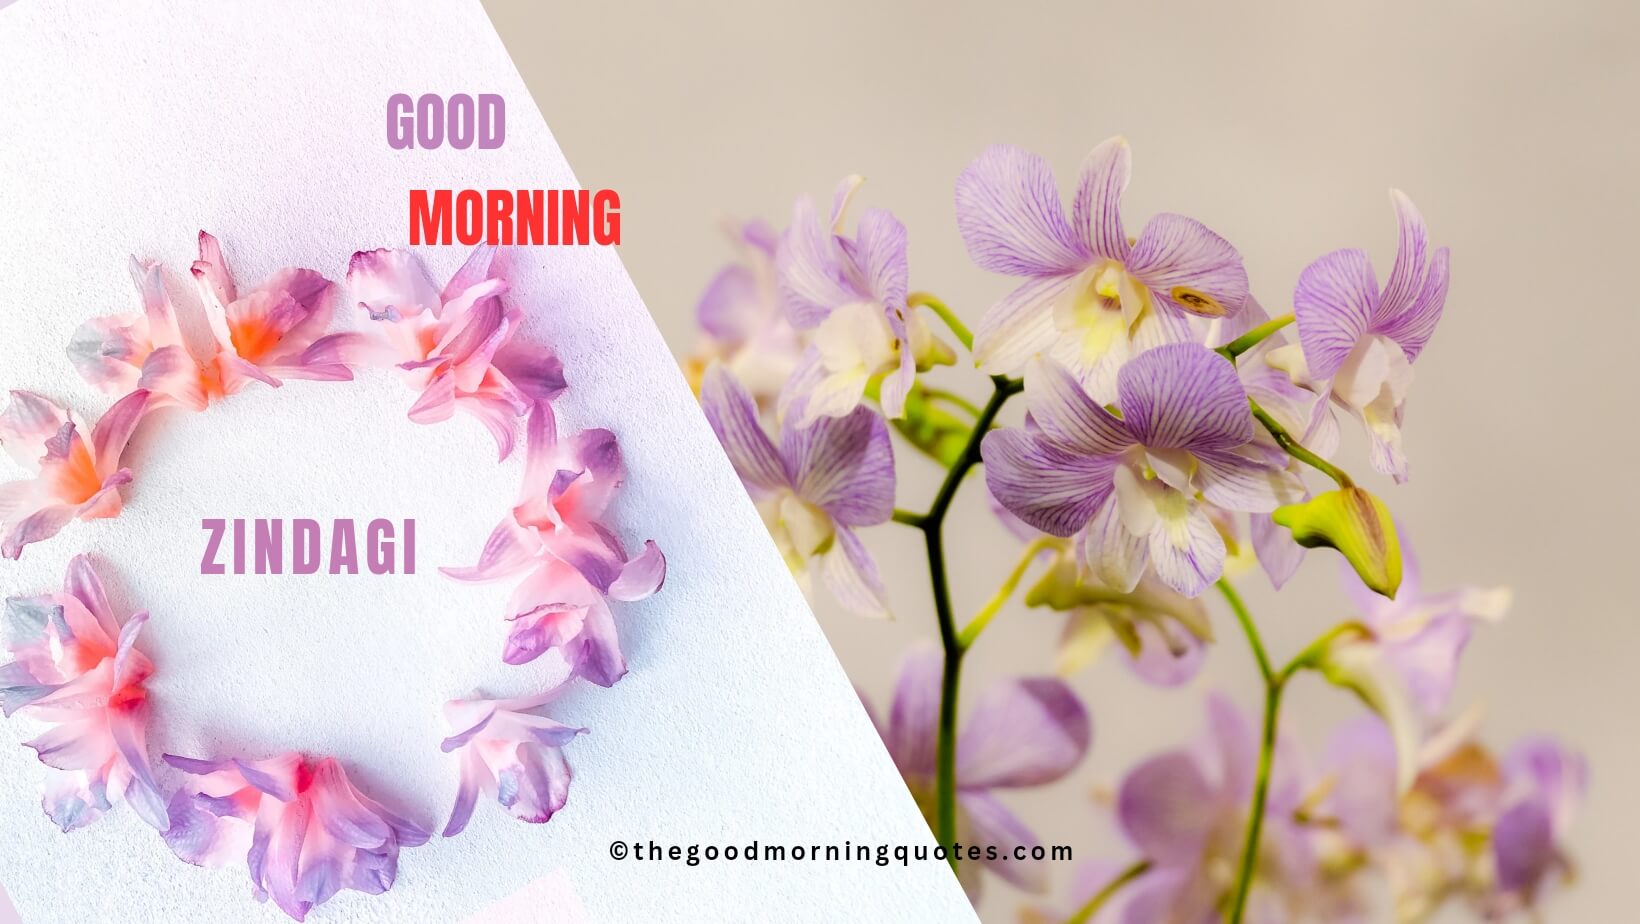 Zindagi Good Morning Quotes in Hindi